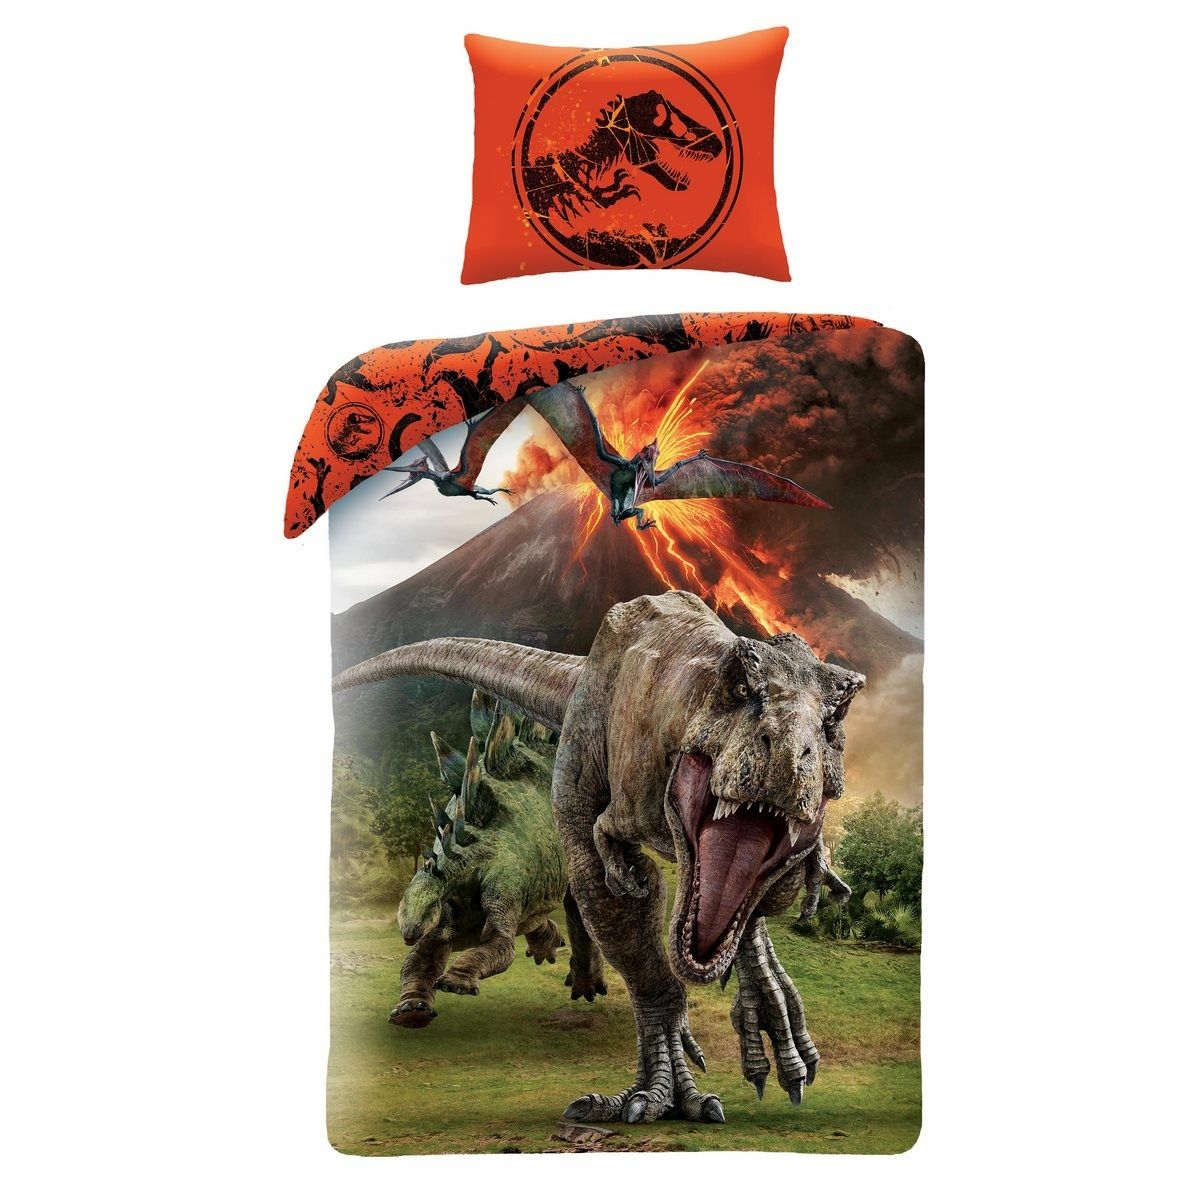 Halantex Dětské bavlněné povlečení Jurassic Park oranžová, 140 x 200 cm, 70 x 90 cm - 4home.cz